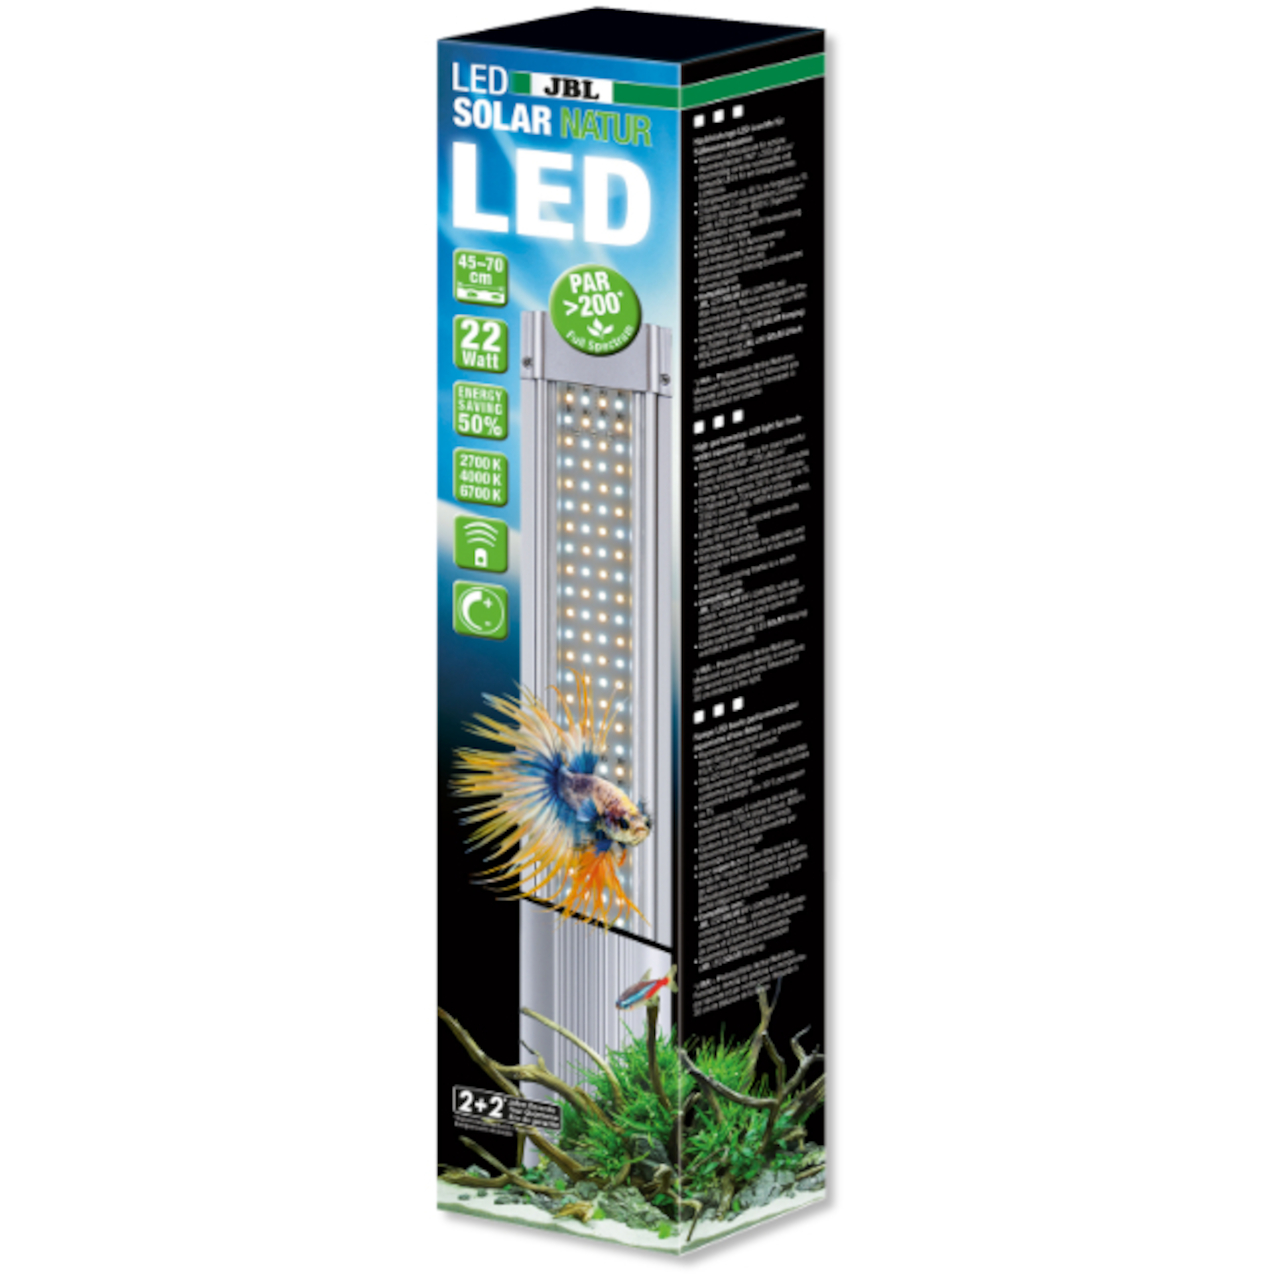 JBL LED Solar Natur 68 Watt